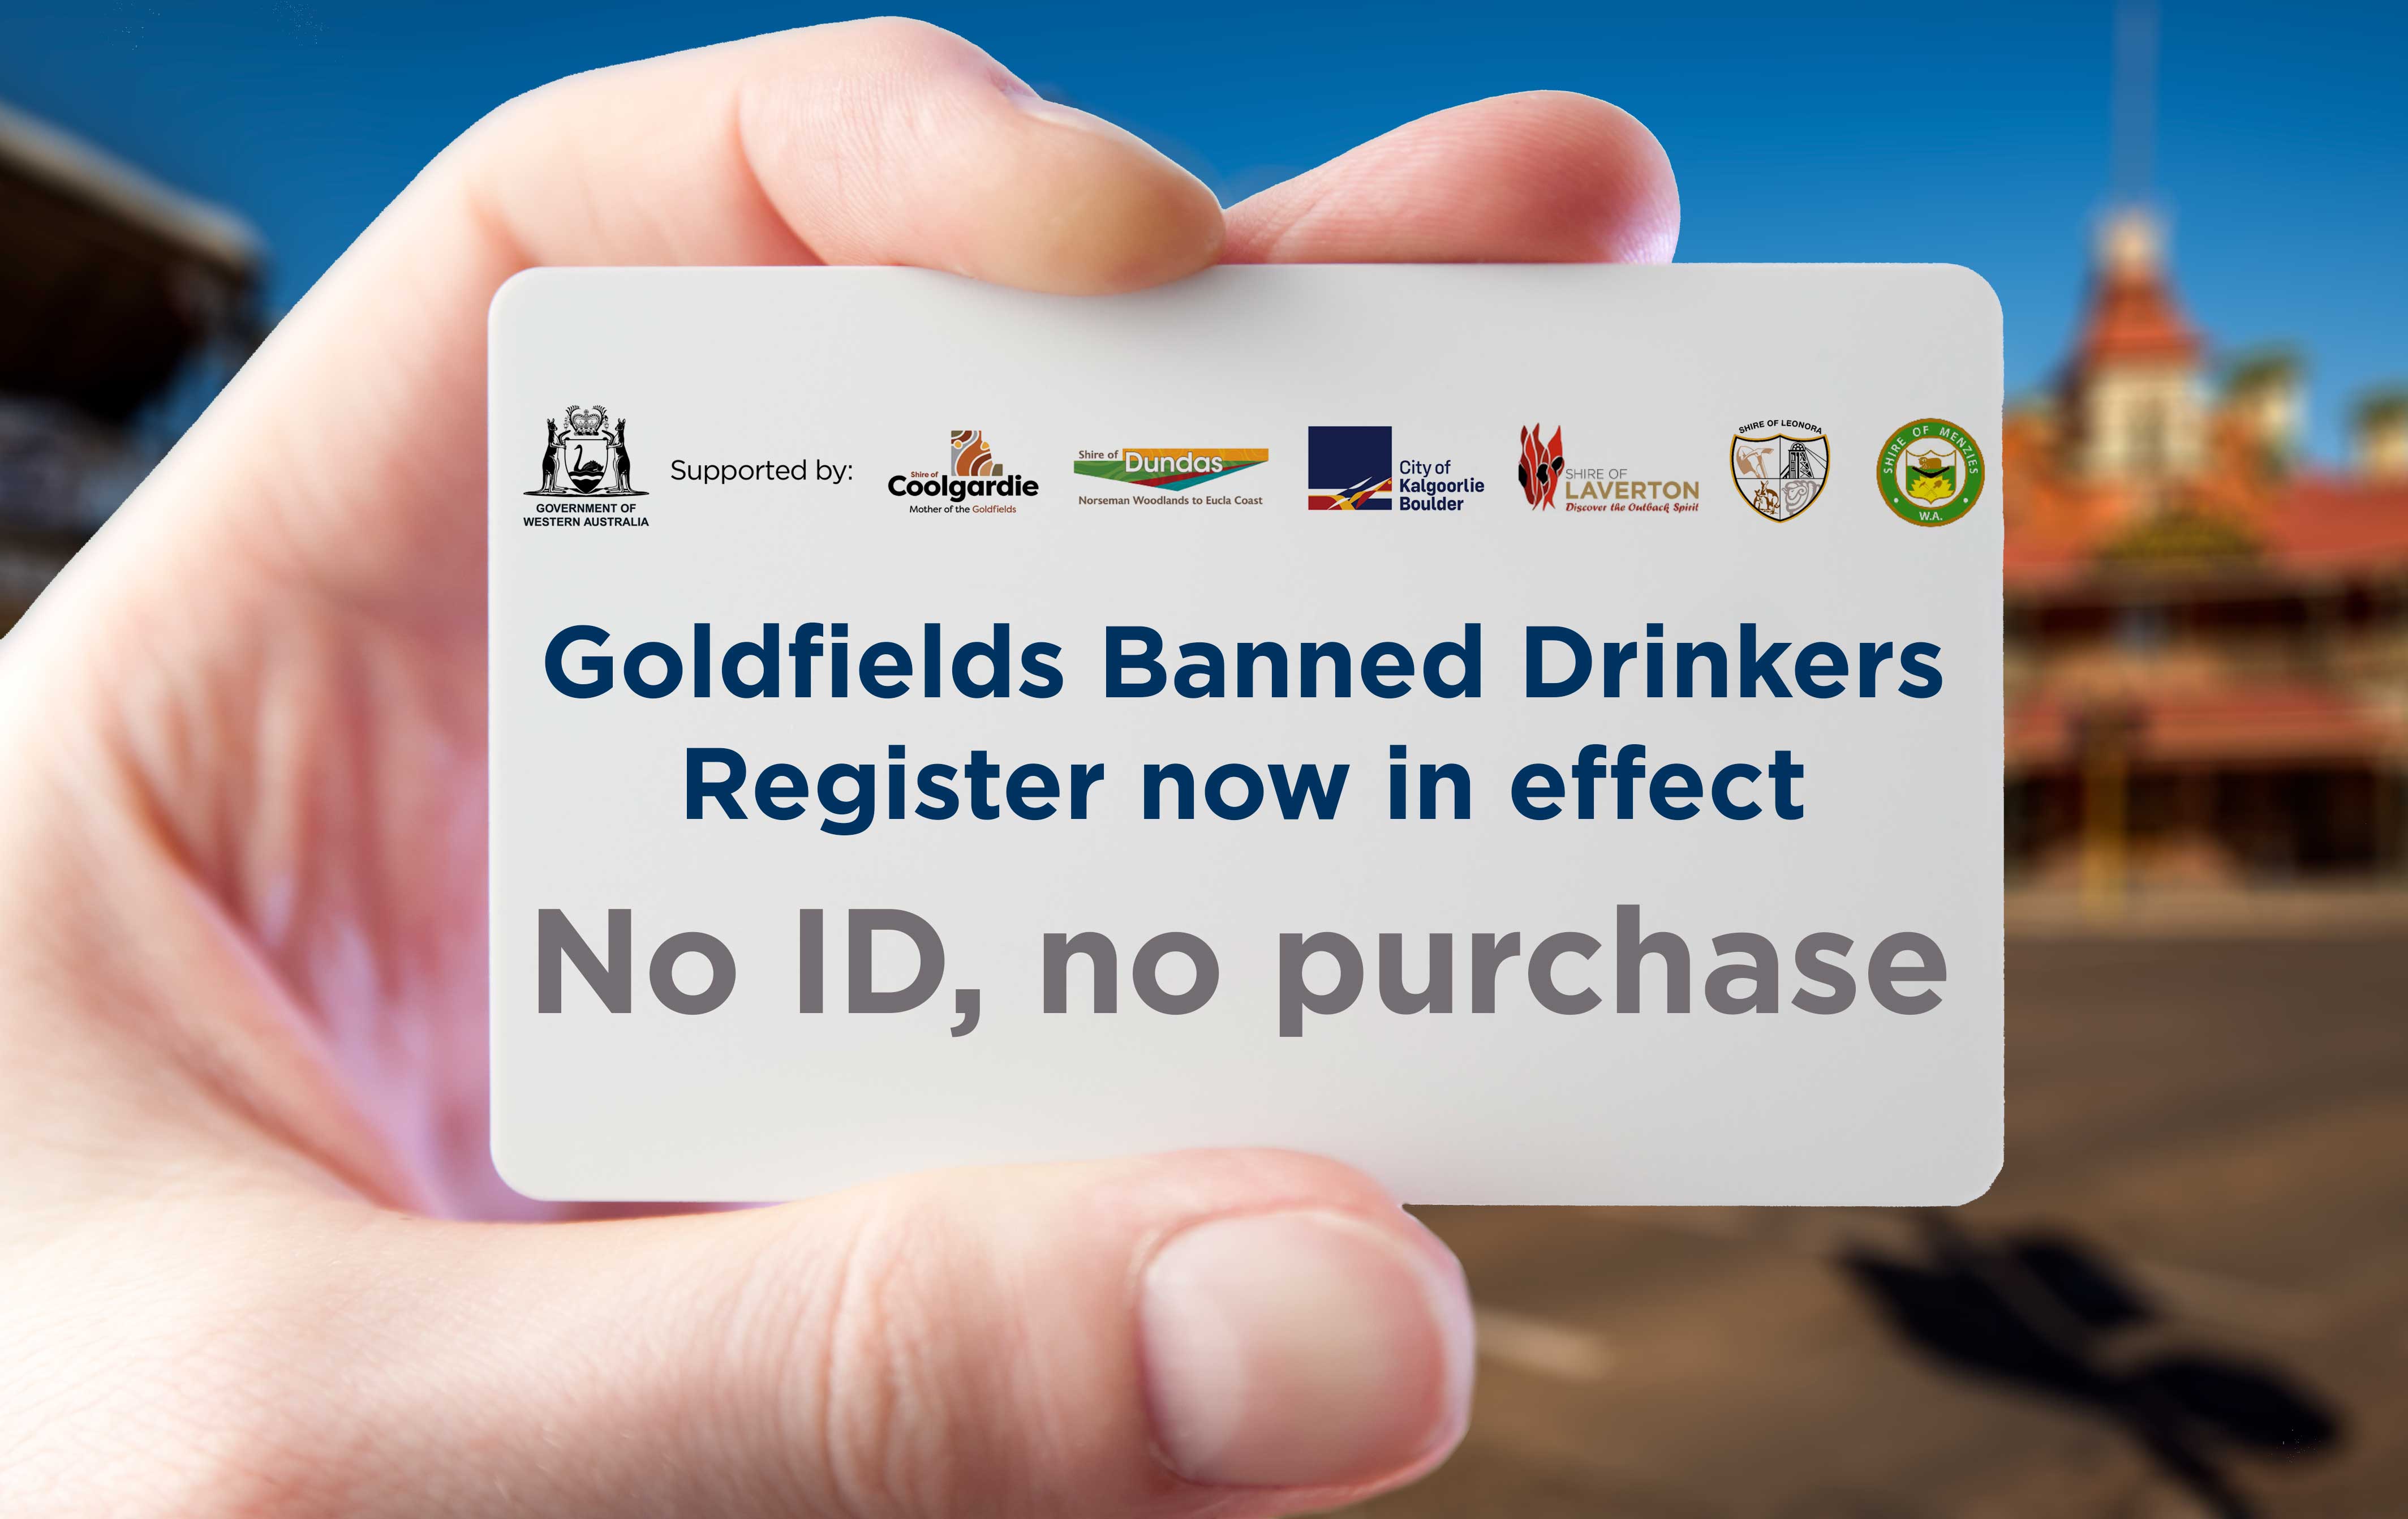 一张印有商标和文字的卡片，上面写着“戈德菲尔德禁酒令登记生效”。没有身份证，就没有购买。”